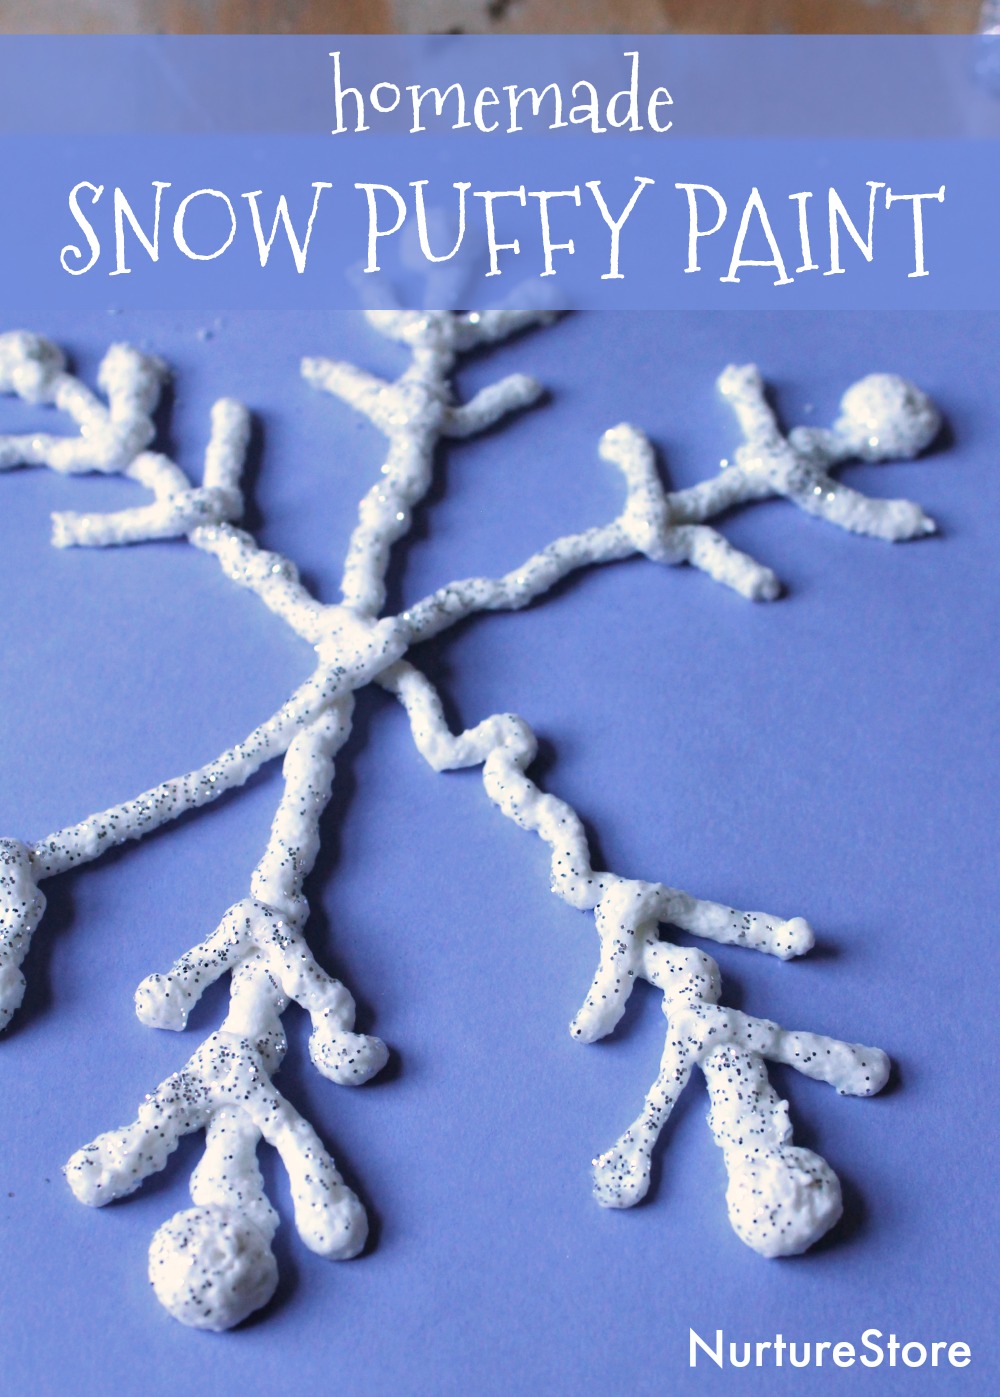 Snow puffy paint - NurtureStore